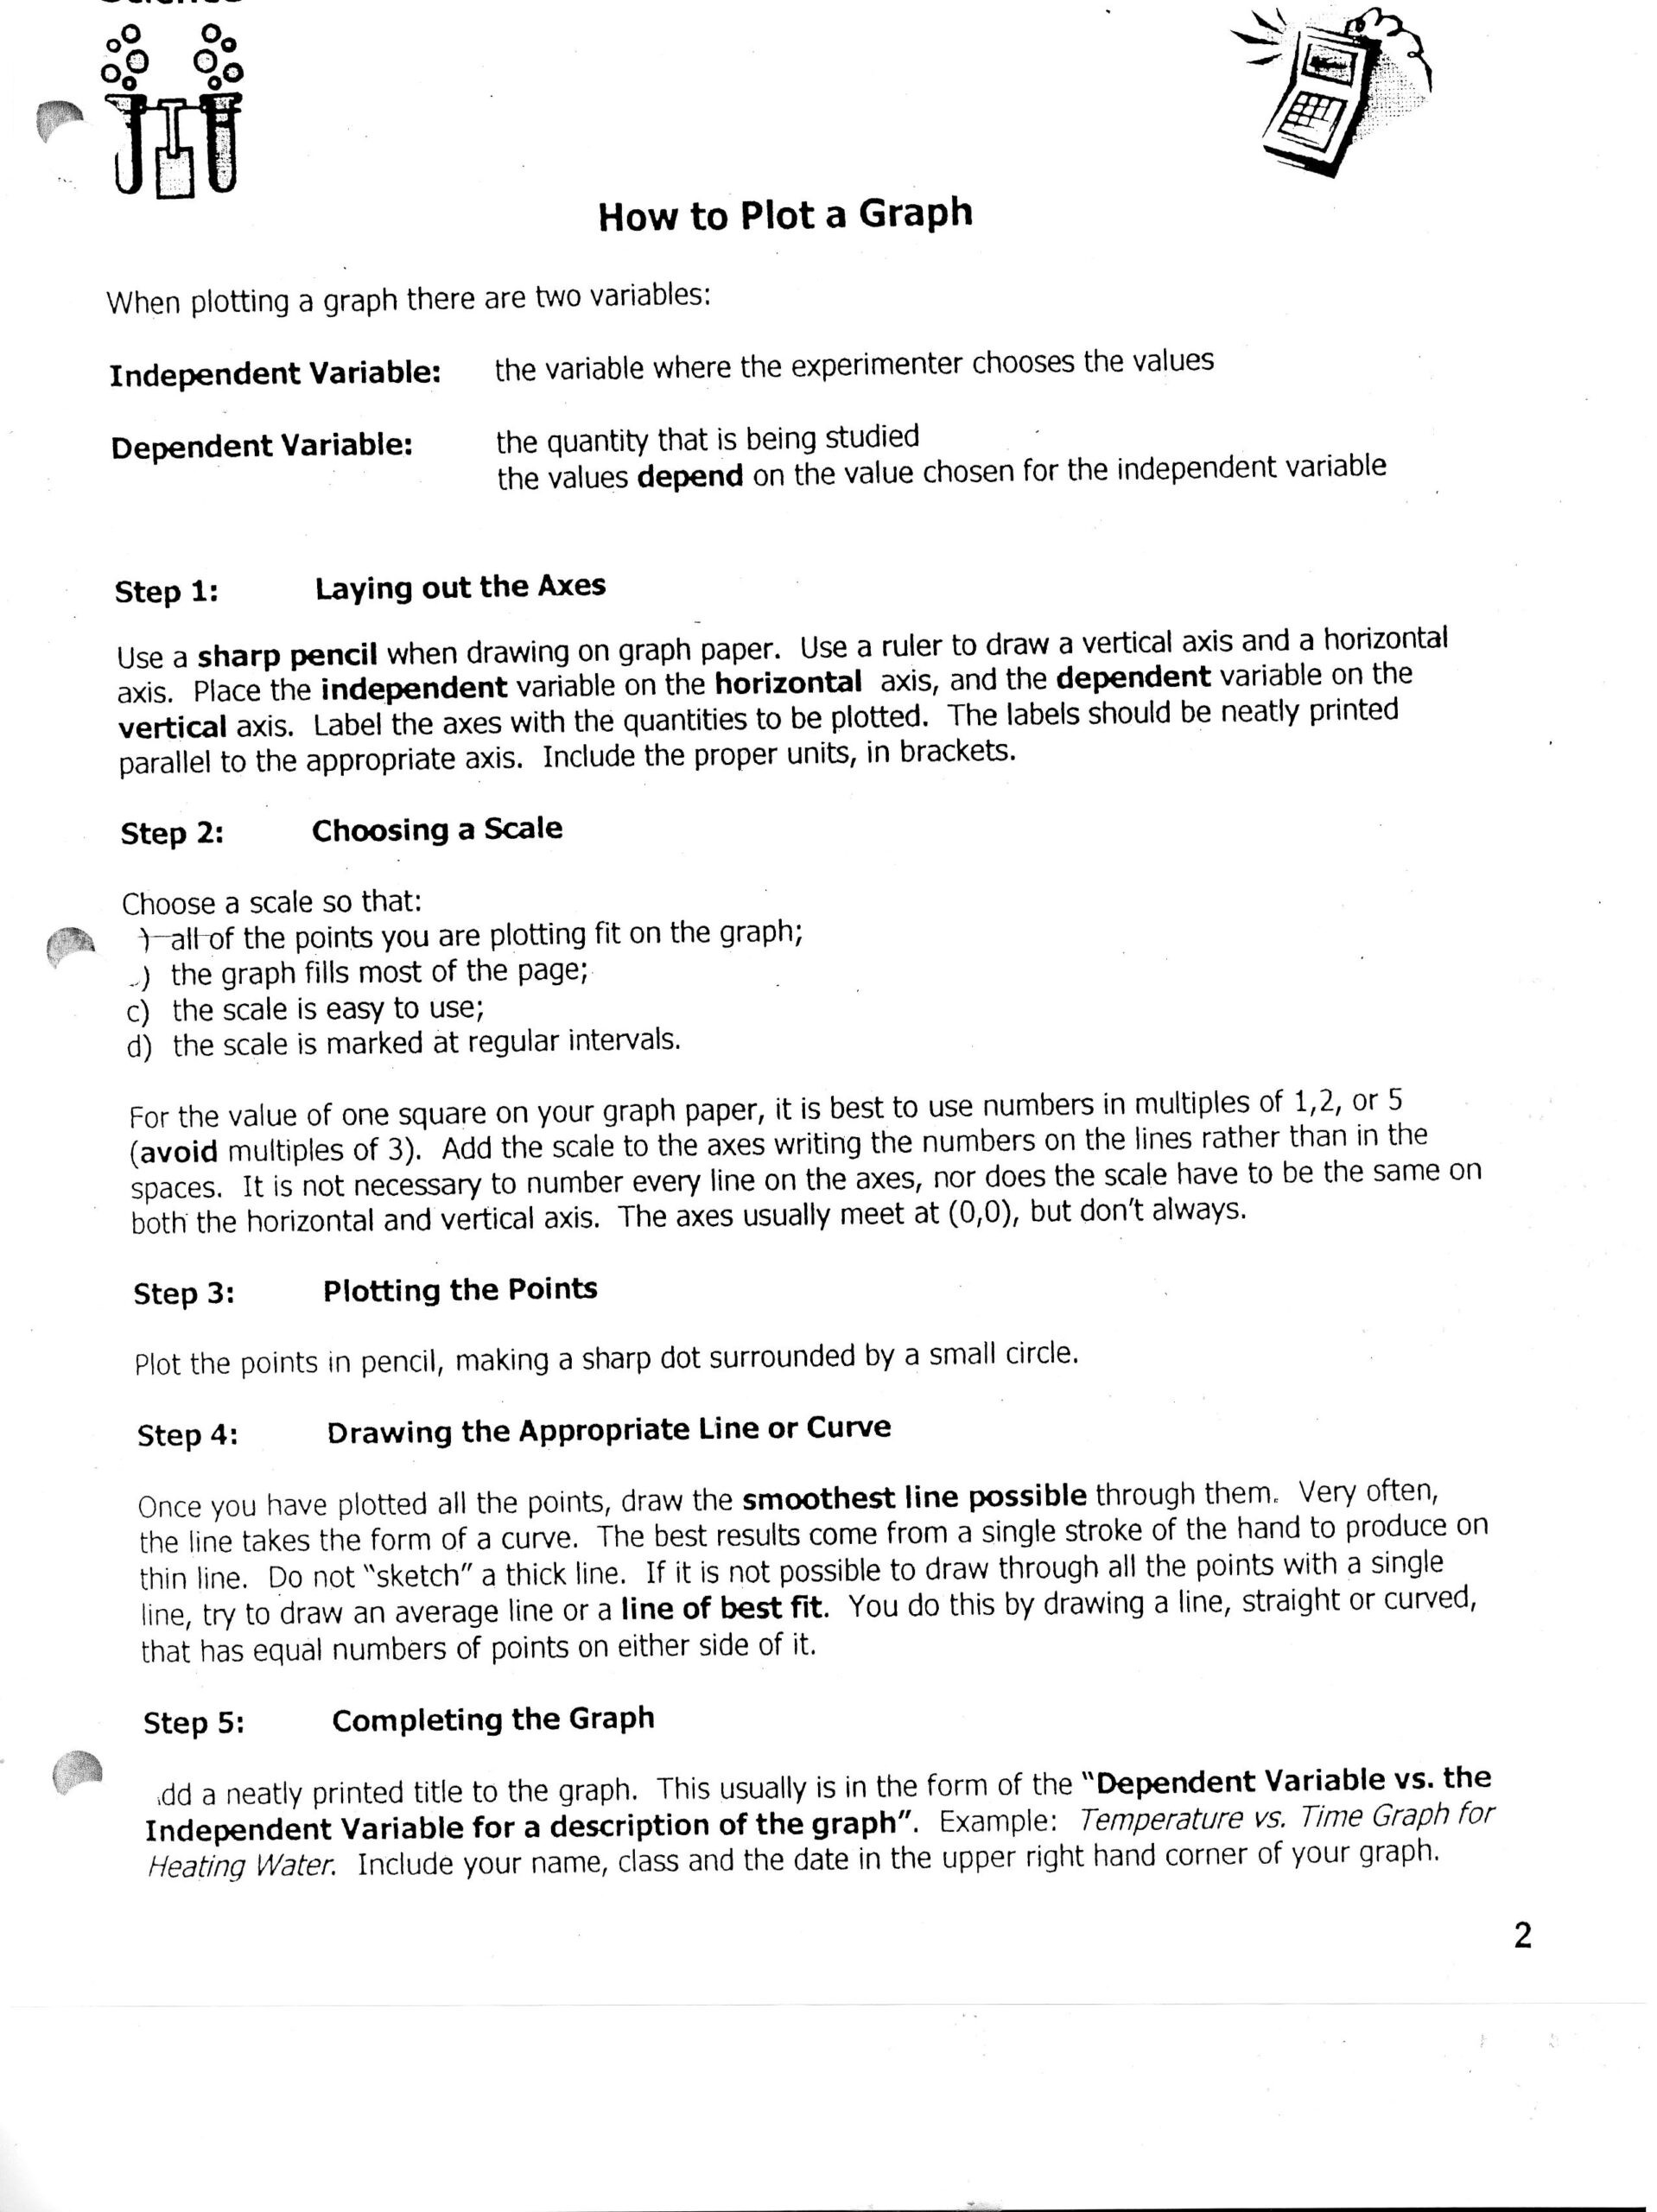 Scientific Method Story Worksheet Answers Identifying Variables Worksheet Answers Printable Worksheets